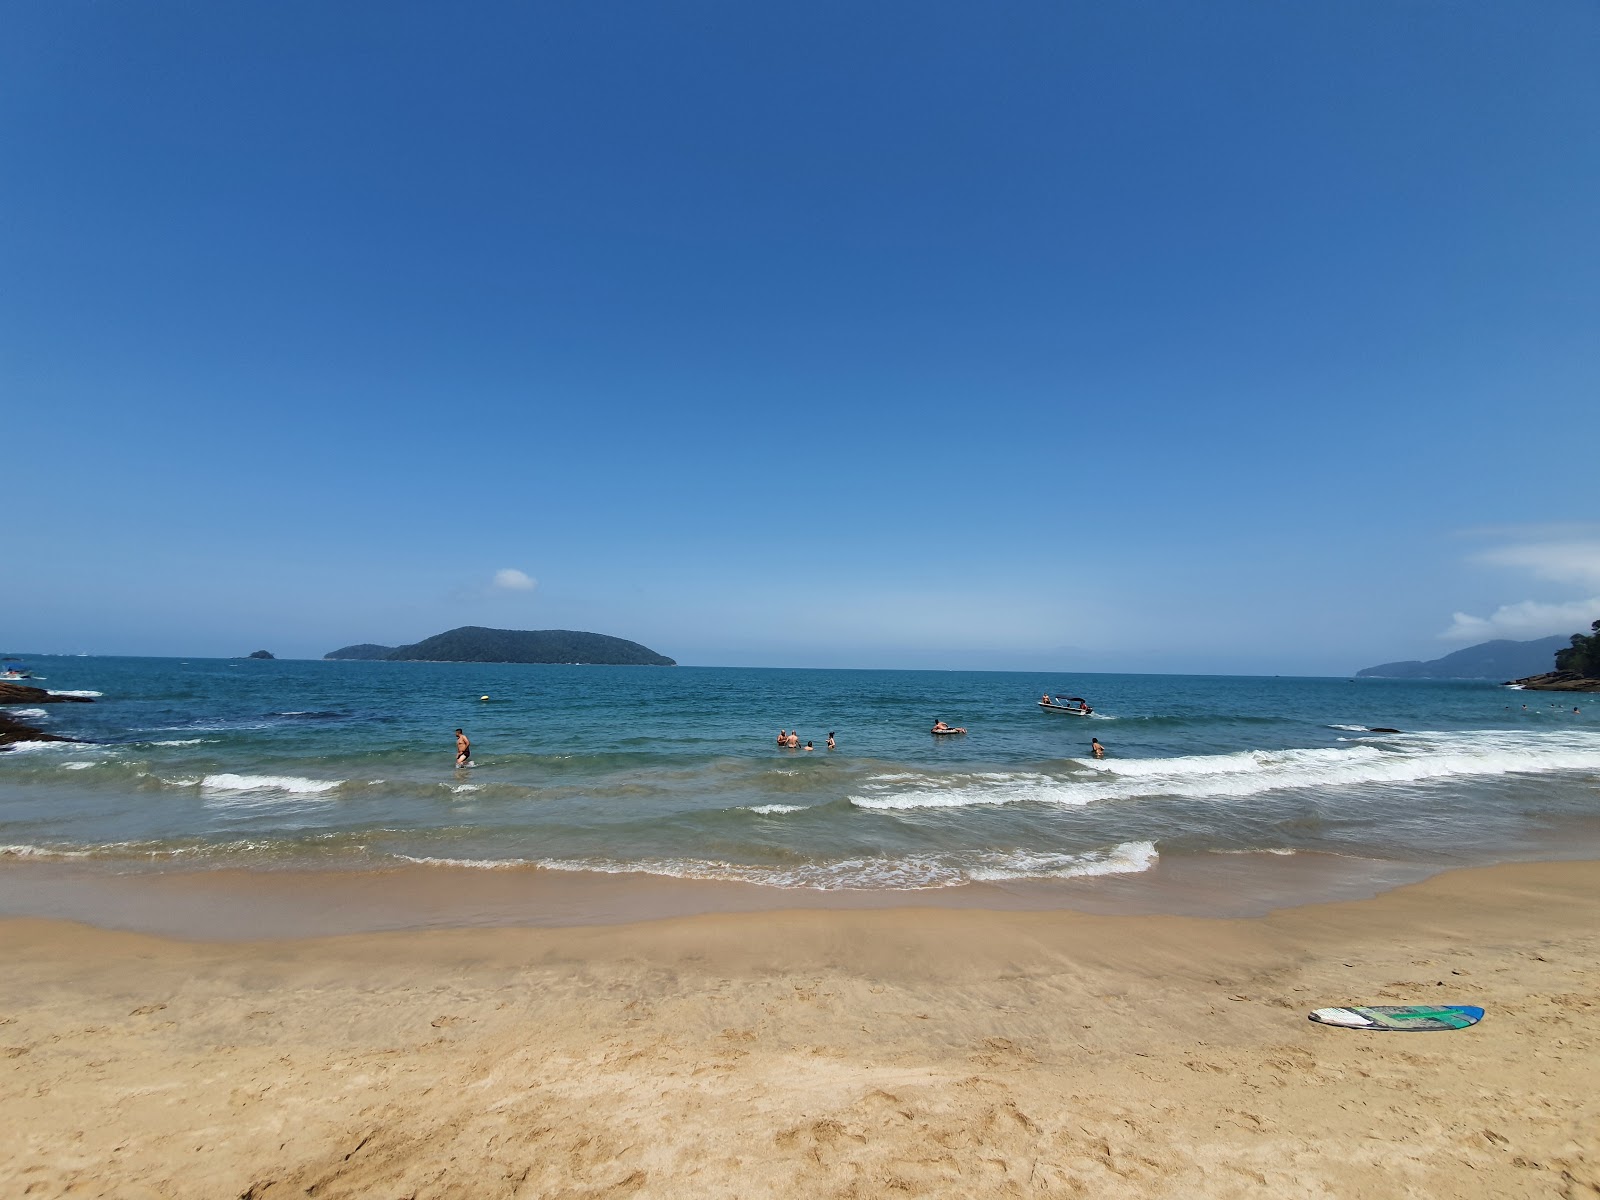 Cedro do Sul Plajı'in fotoğrafı geniş ile birlikte